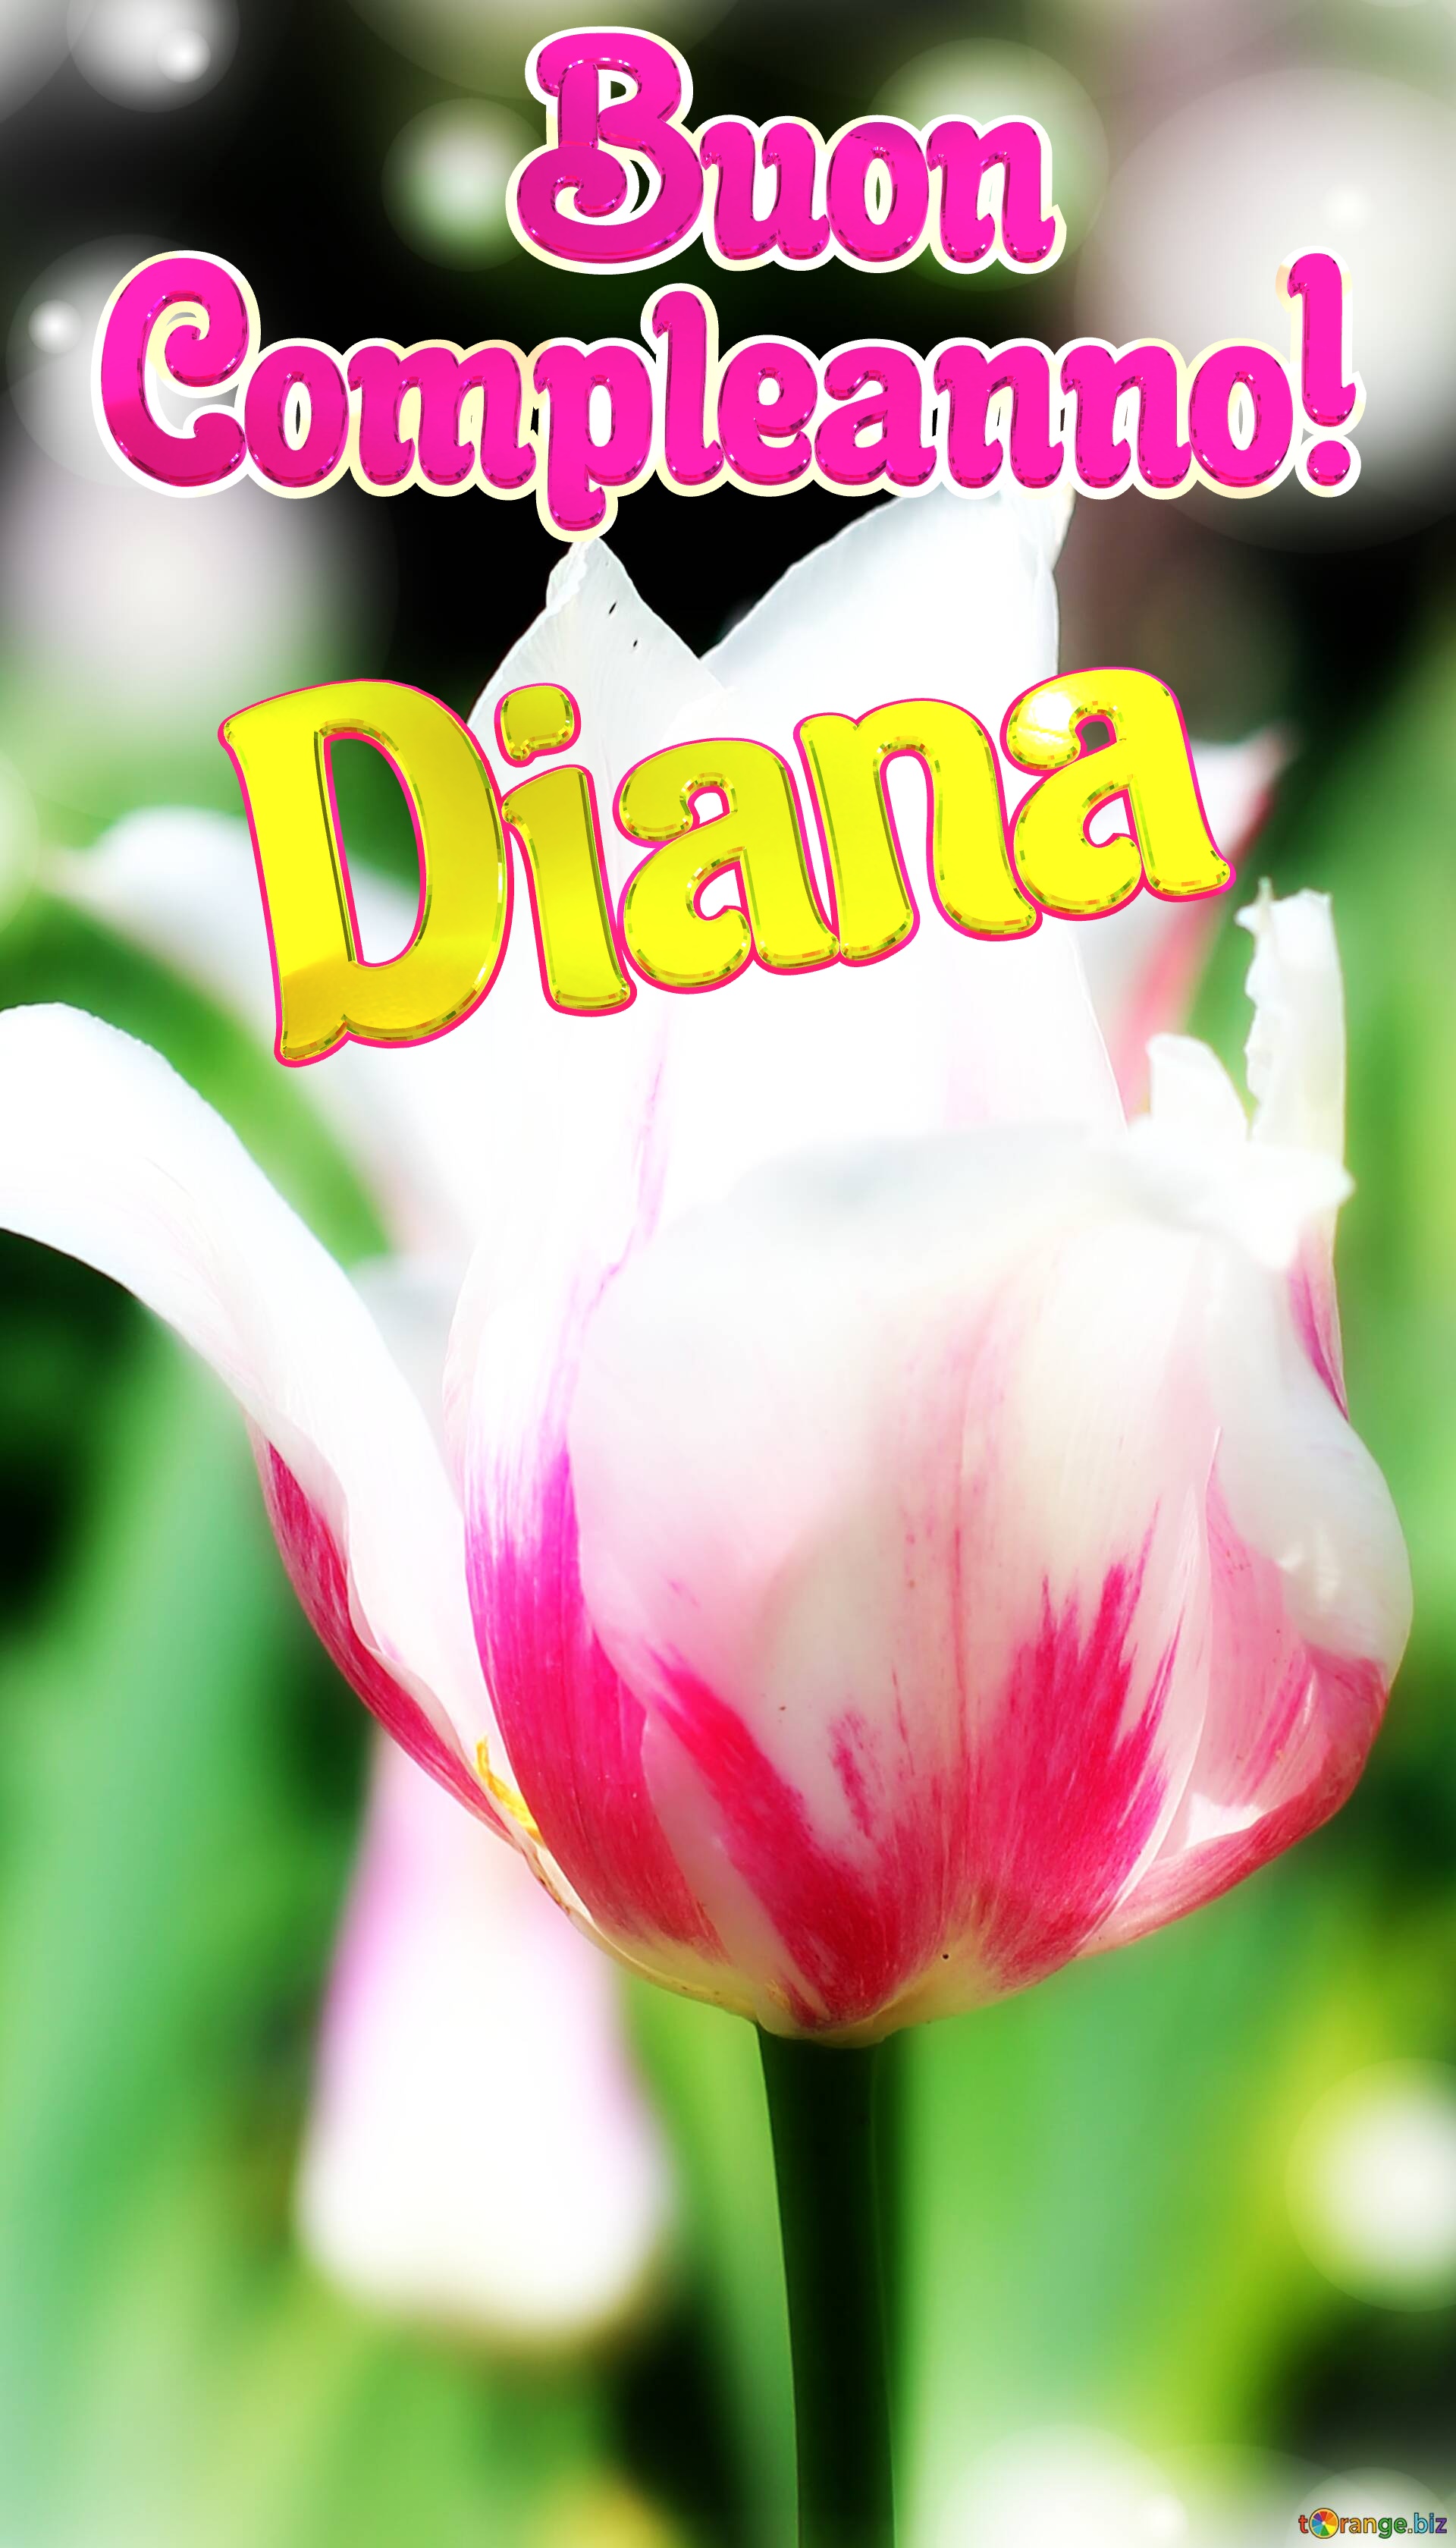       Buon  Compleanno! Diana  Che questi fiori ti portino la stessa bellezza e felicità della primavera. №0